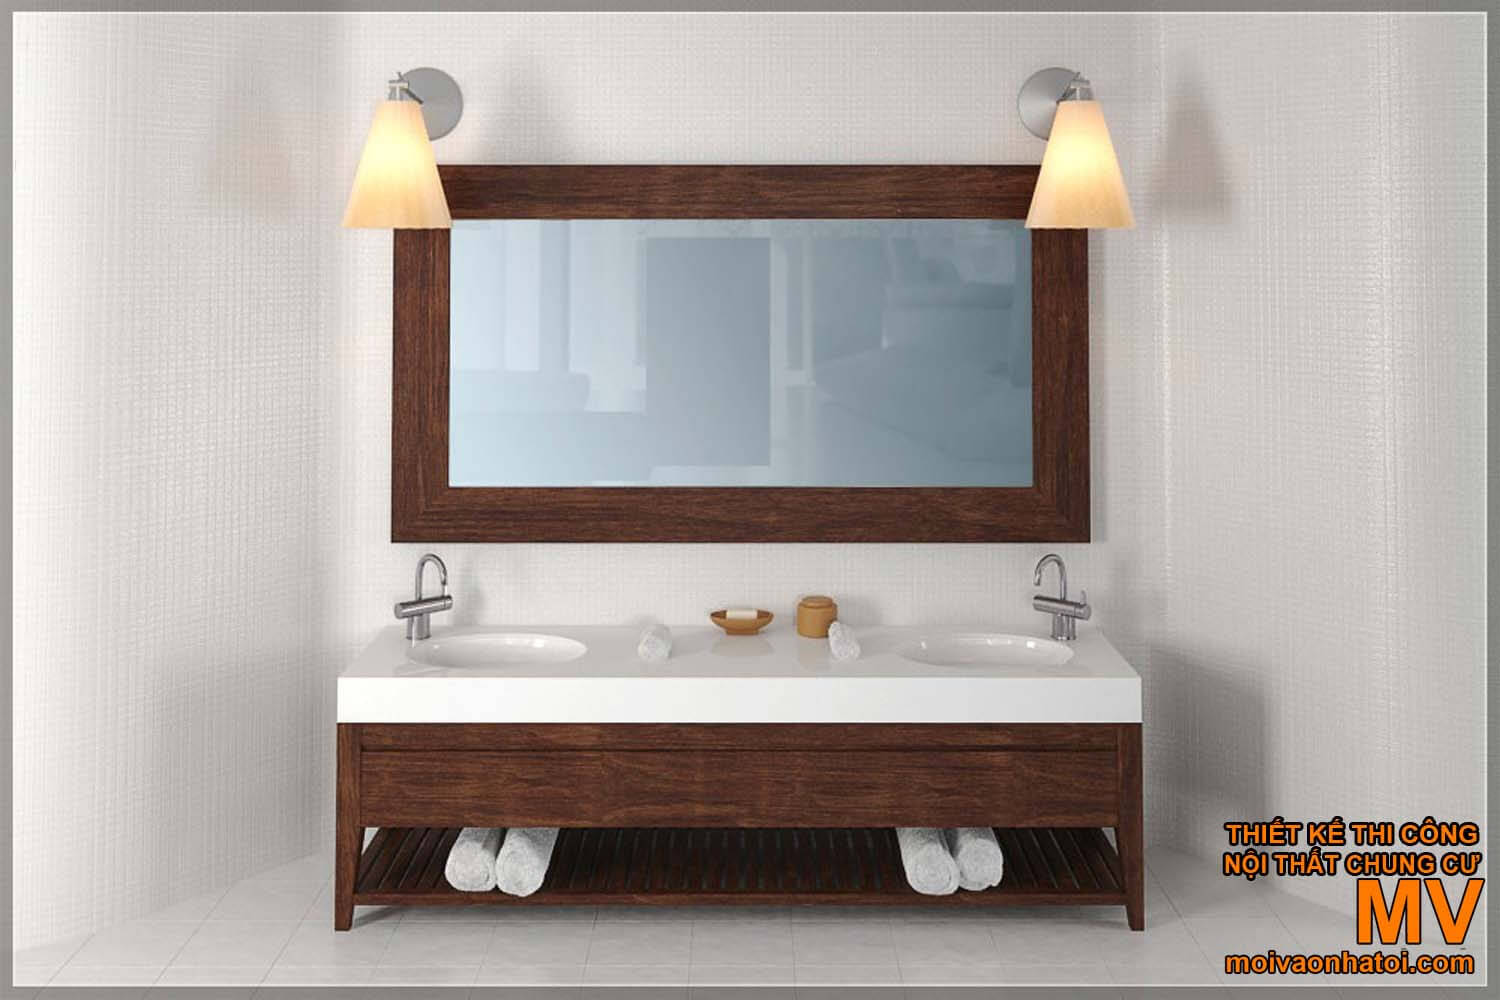 миття обличчя лавабо, гарний сучасний дизайн ванної кімнати